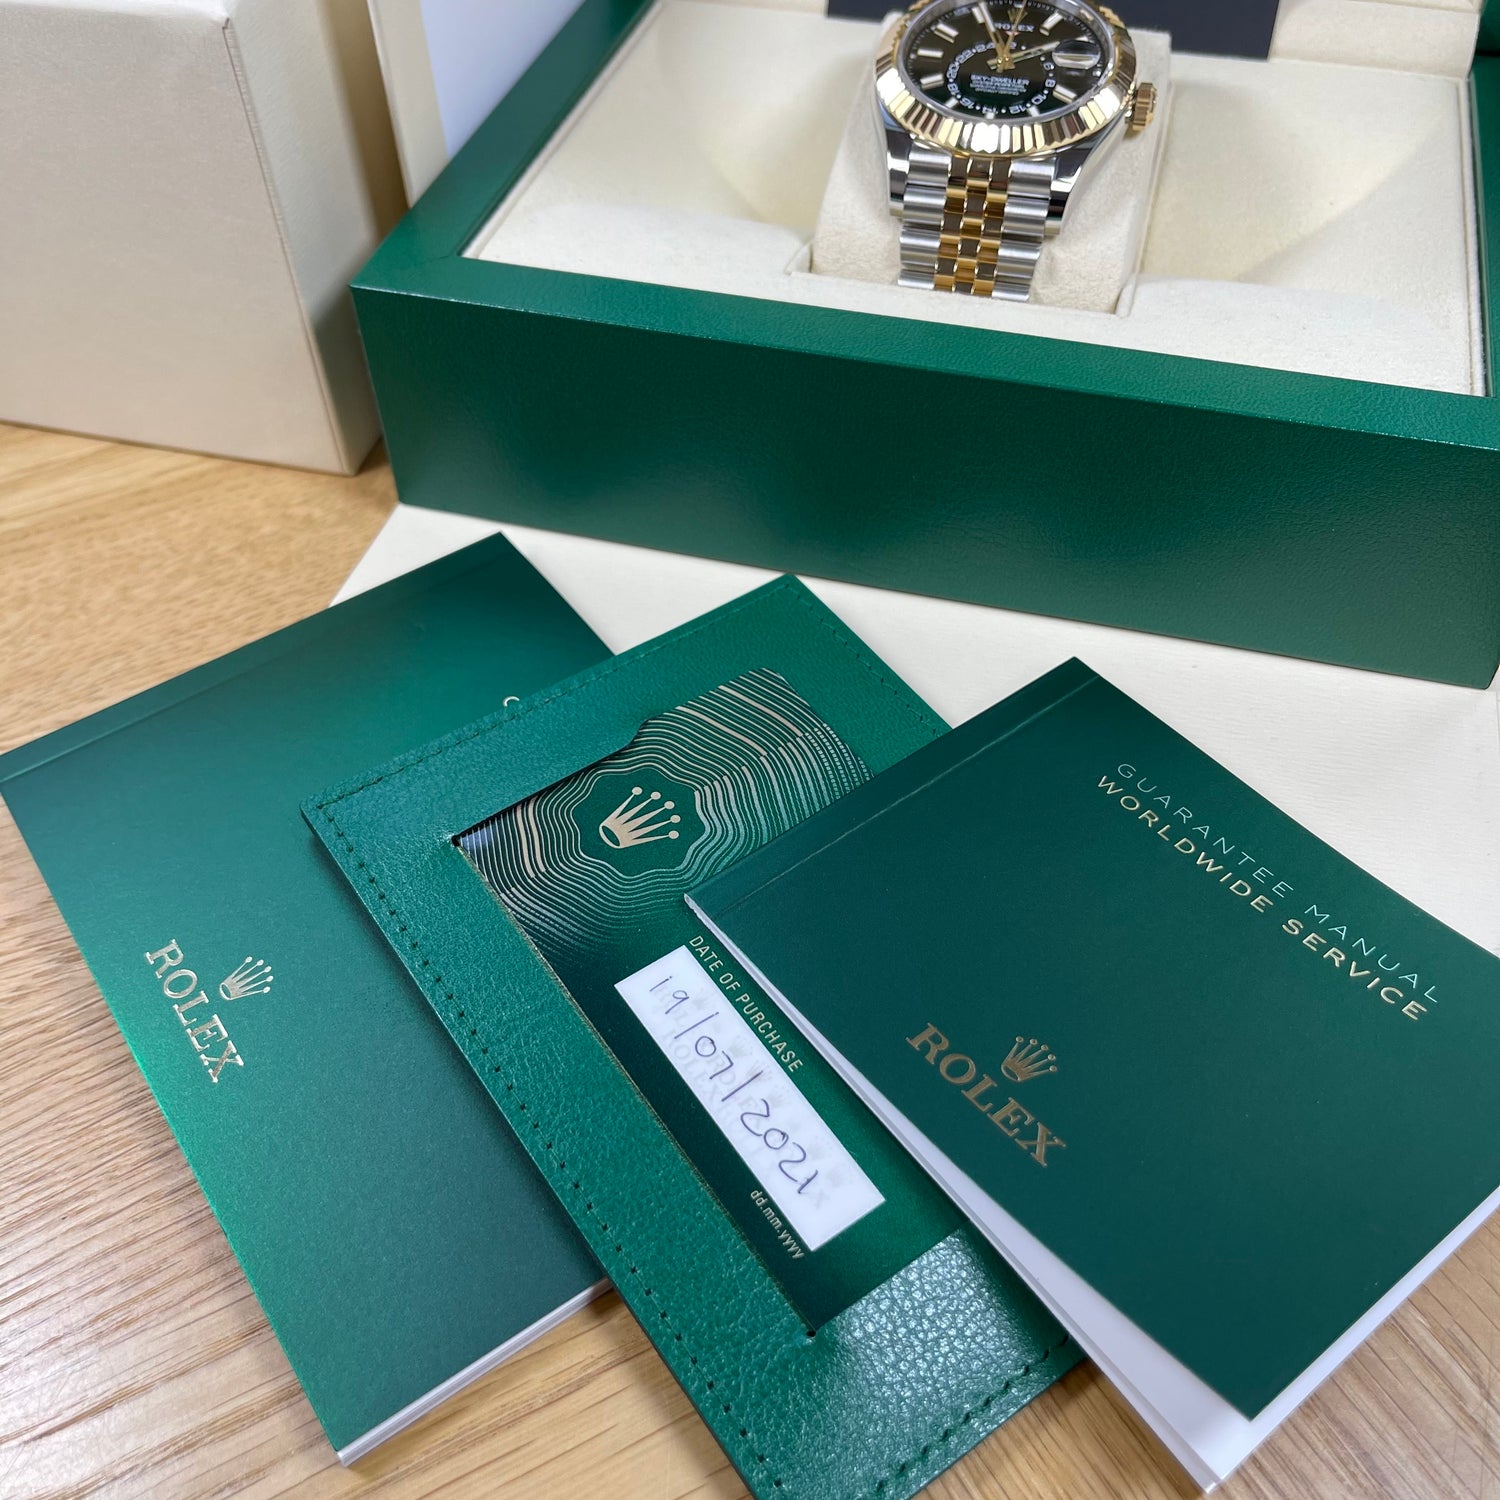 Rolex Sky-Dweller Jubilee Black Dial 326933 Brand New 2021 Model Watch